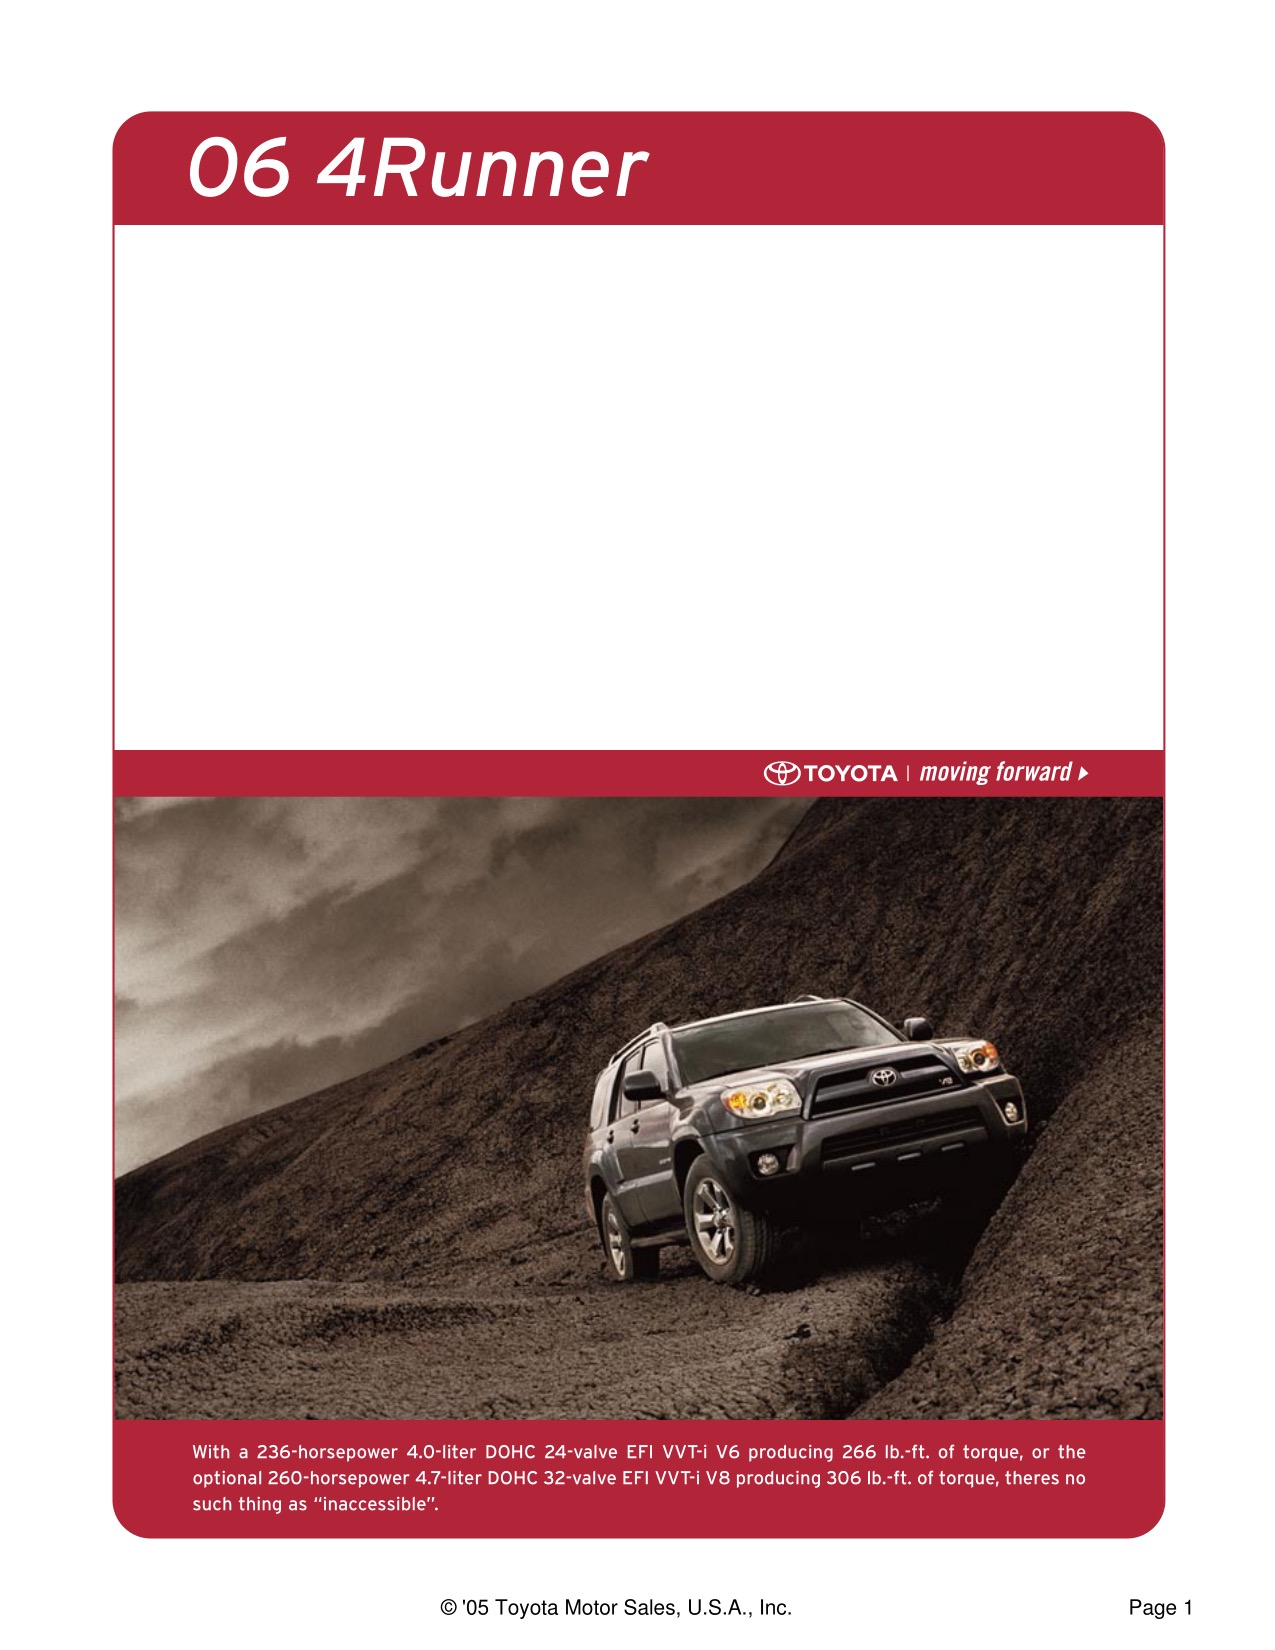 2006 Toyota 4Runner Brochure